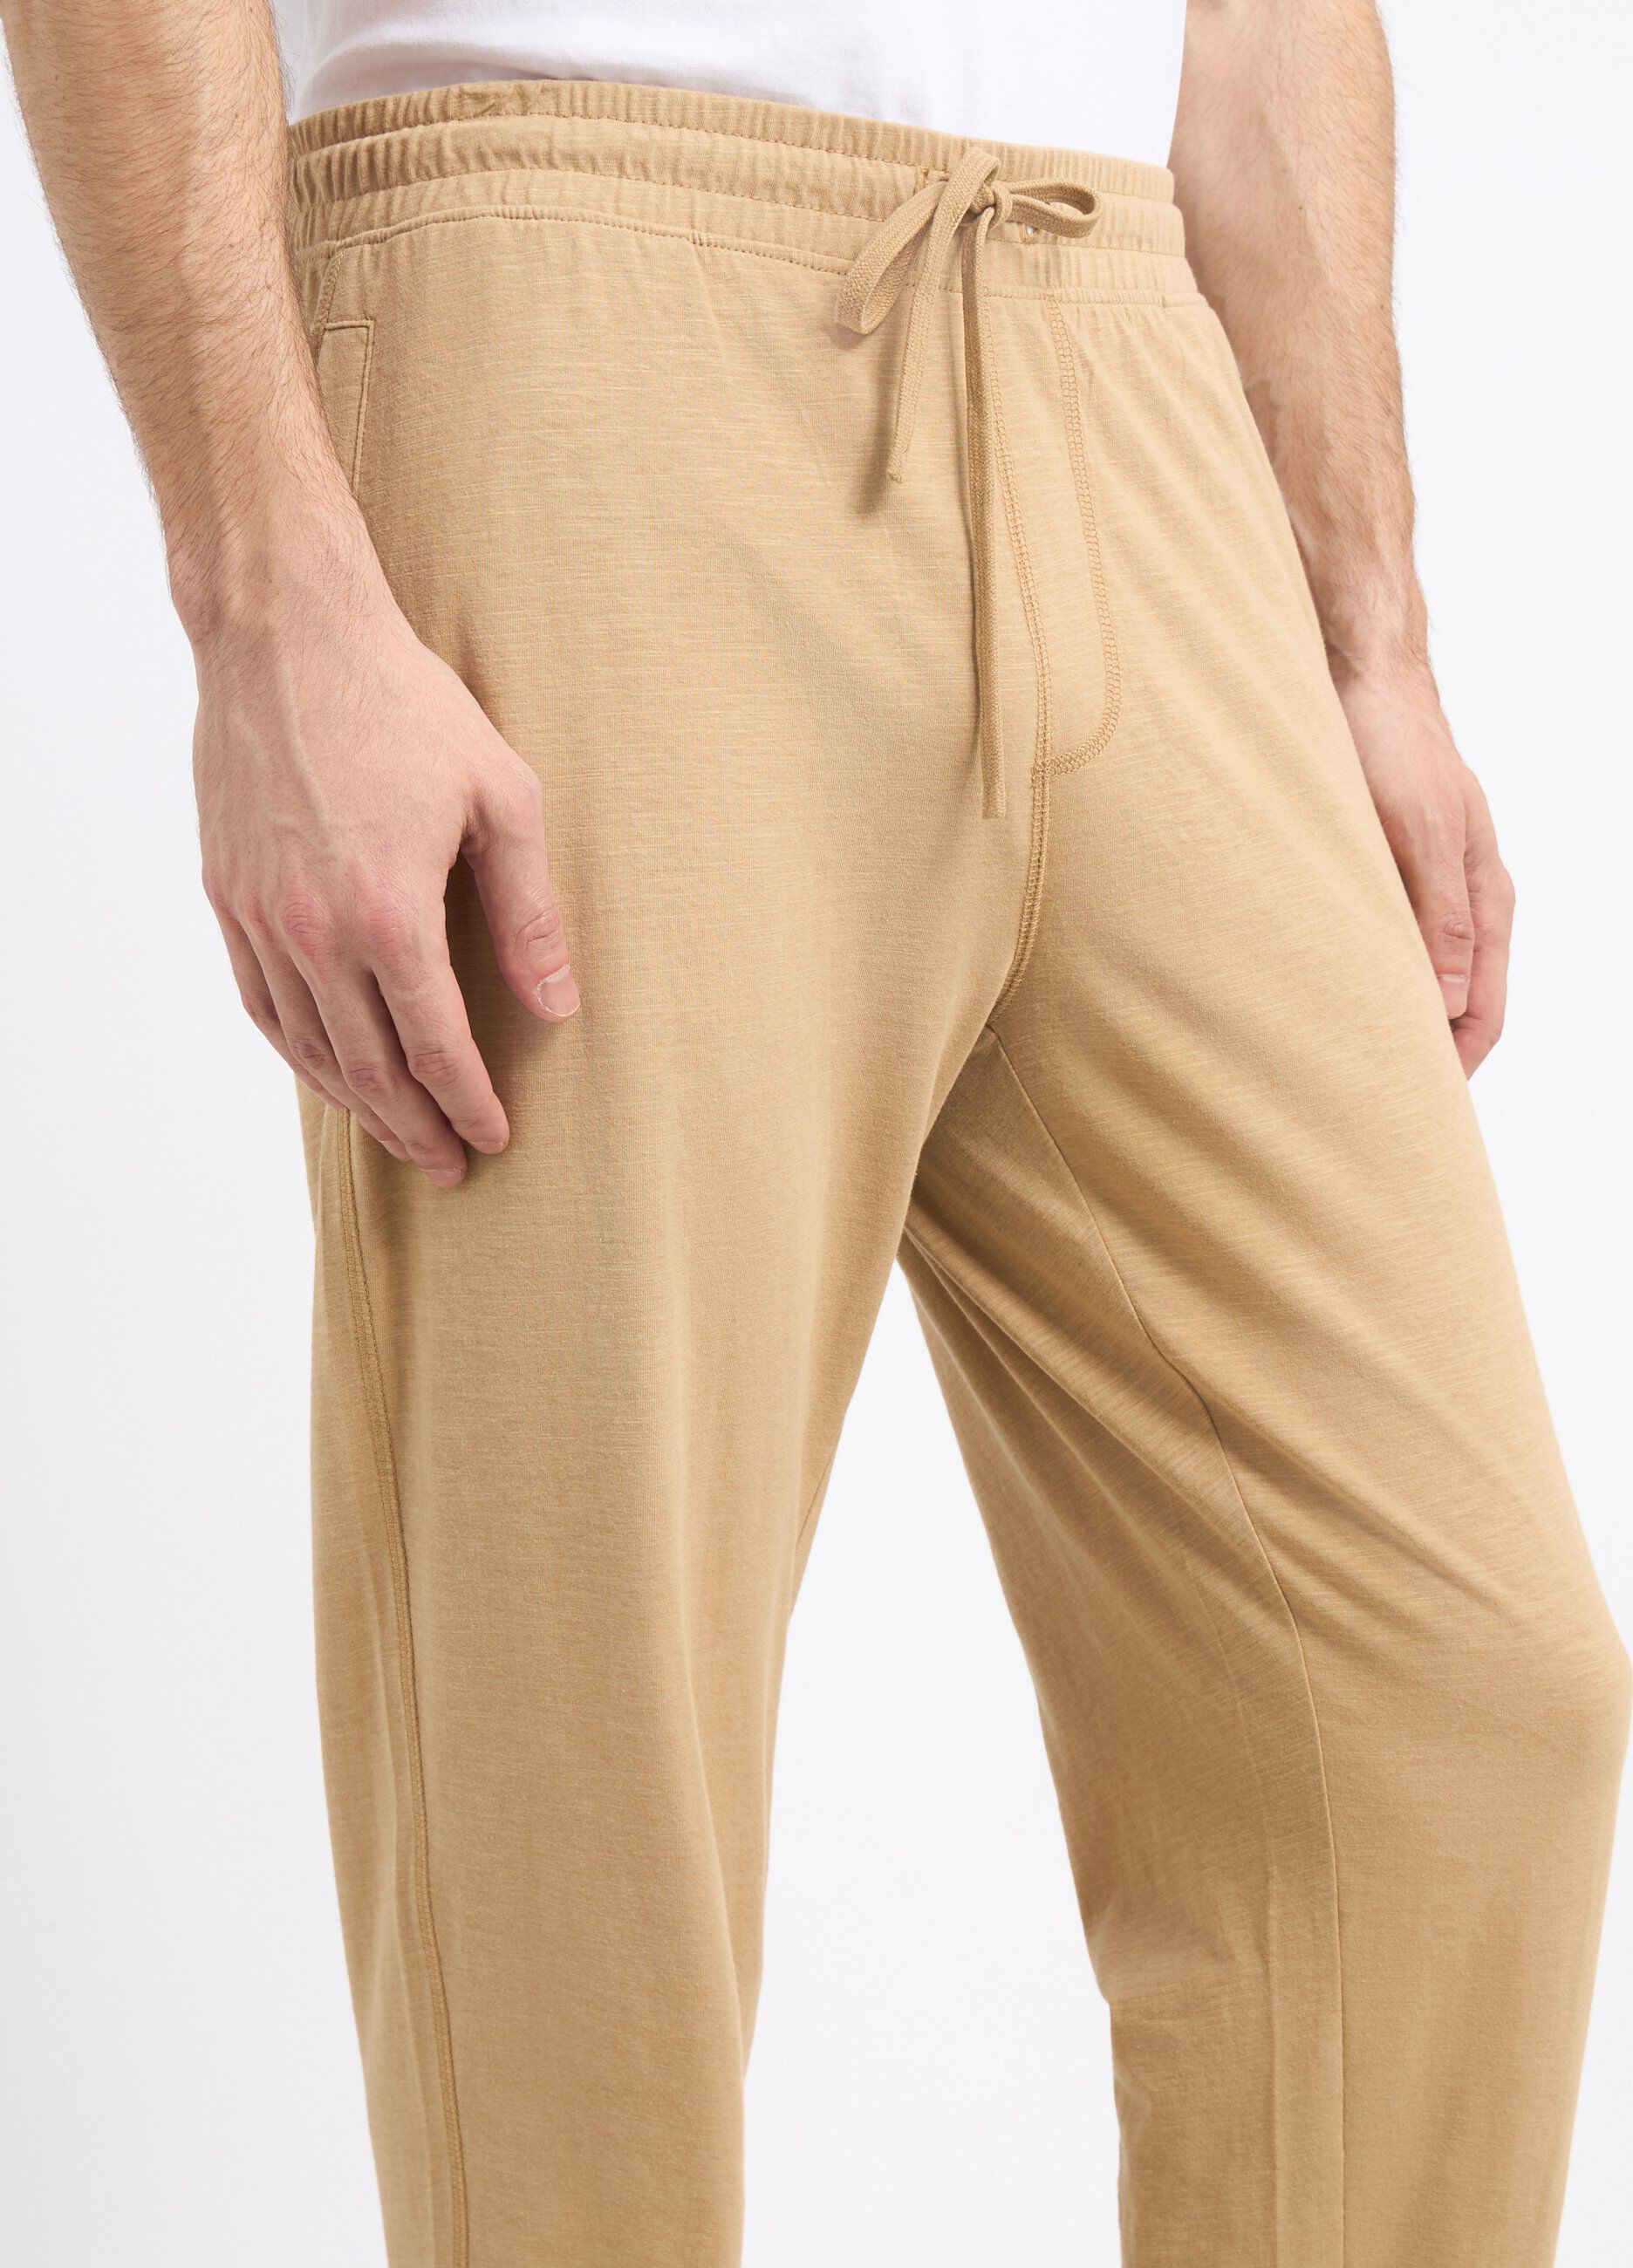 Pantaloni in puro cotone uomo_2